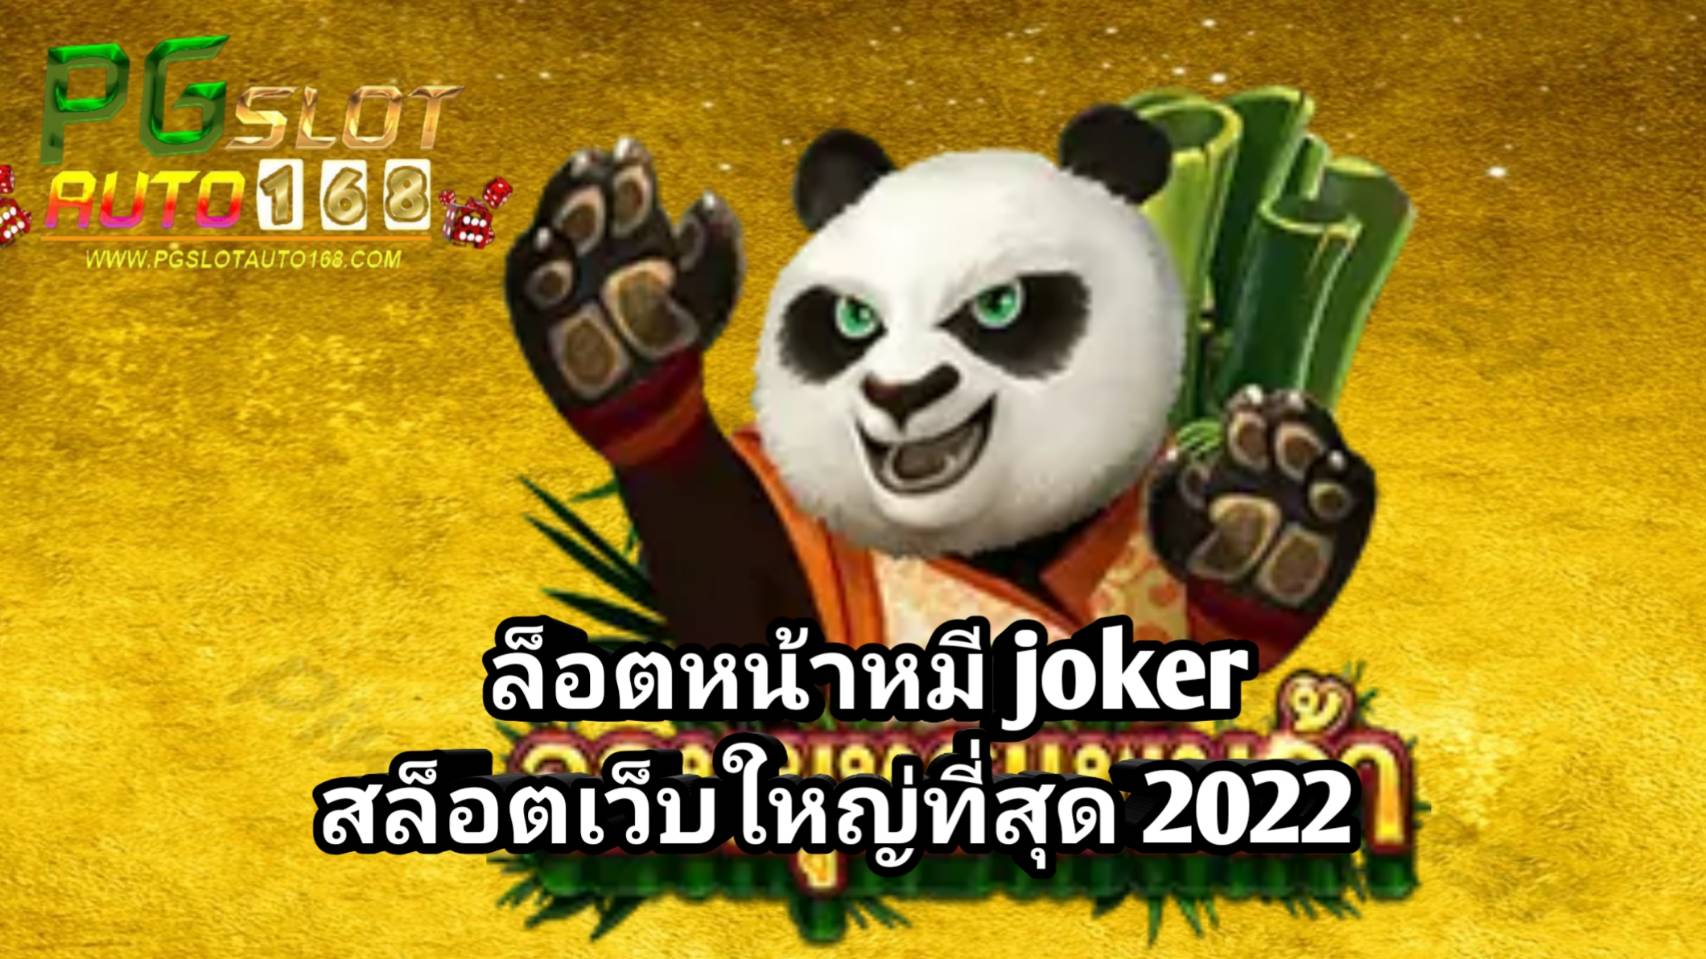 ล็อตหน้าหมี joker สล็อตเว็บใหญ่ที่สุด 2022